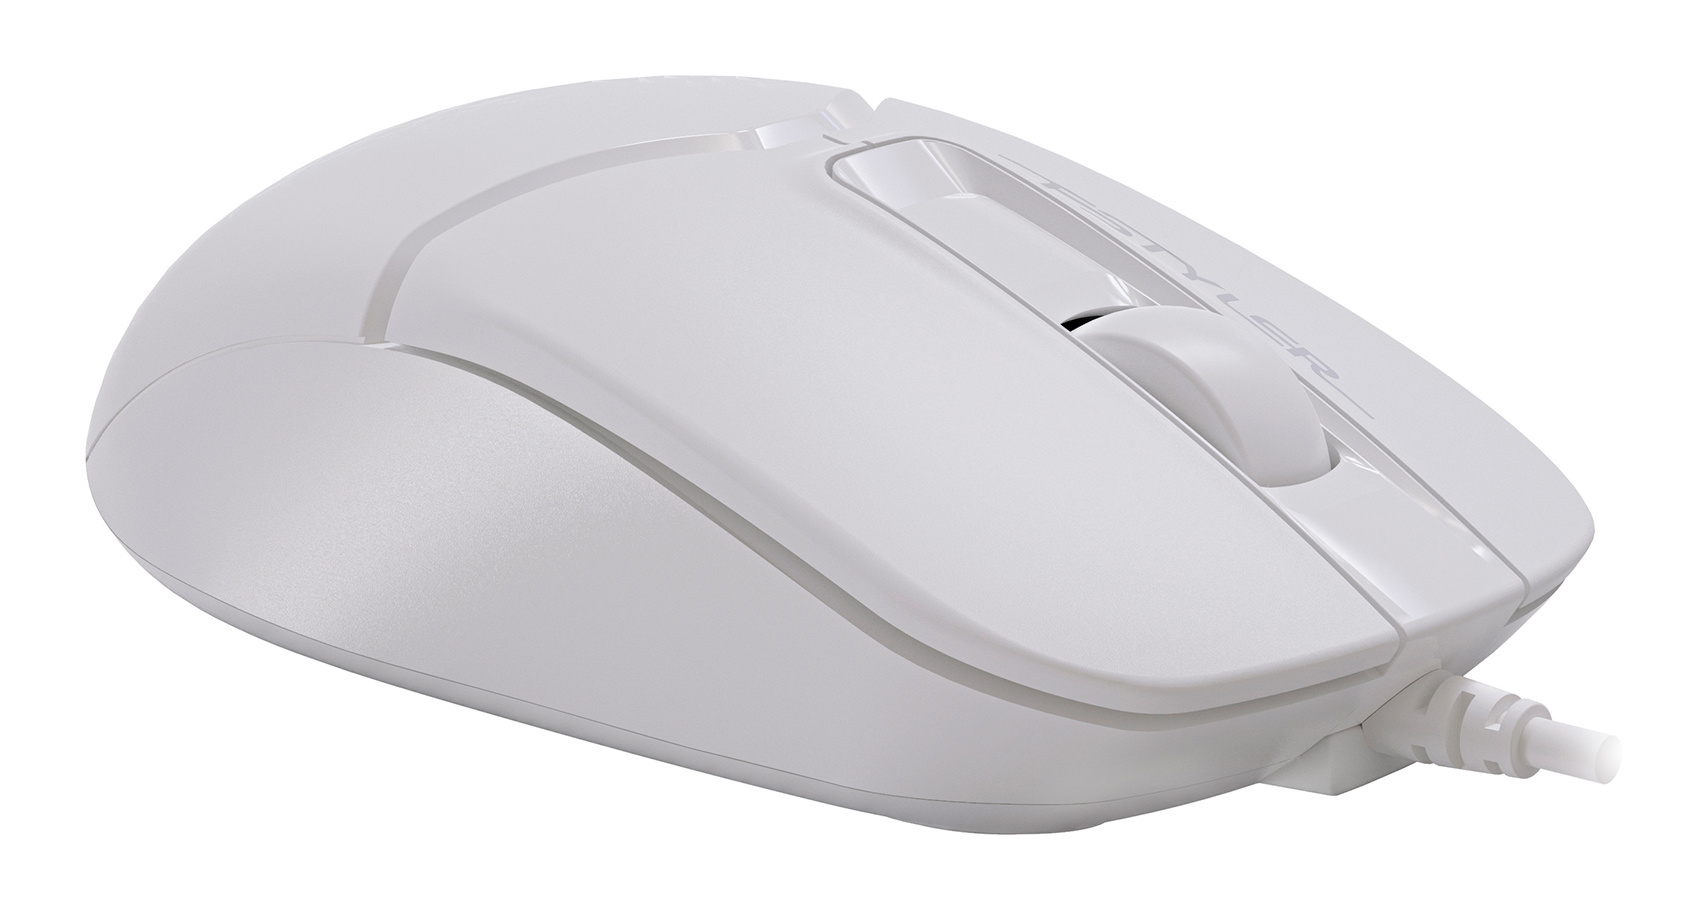 Комплект клавиатура + мышь A4-Tech Fstyler F1512 (белый, USB, мембранная кл-ра, 1.5 м, полноразмерная кл-ра, оптическая мышь, 1500 dpi) F1512 White